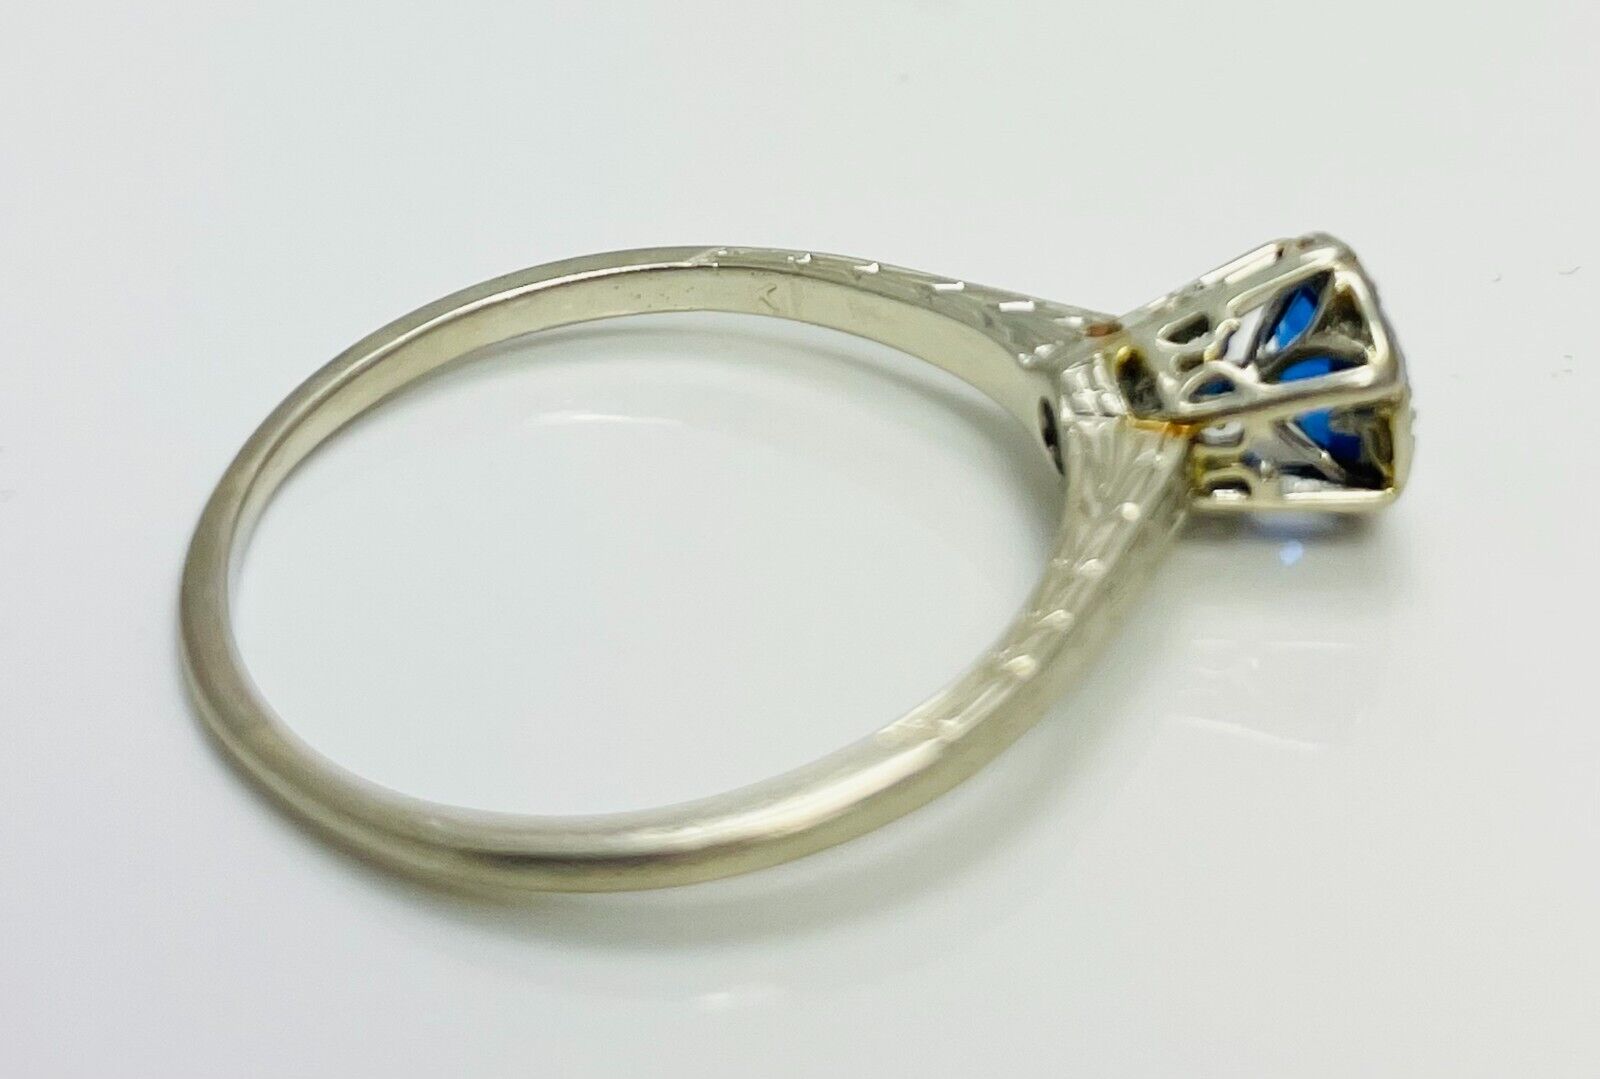 Early 1900's Vibrant Blue Gem 18k White Gold Engagement Ring